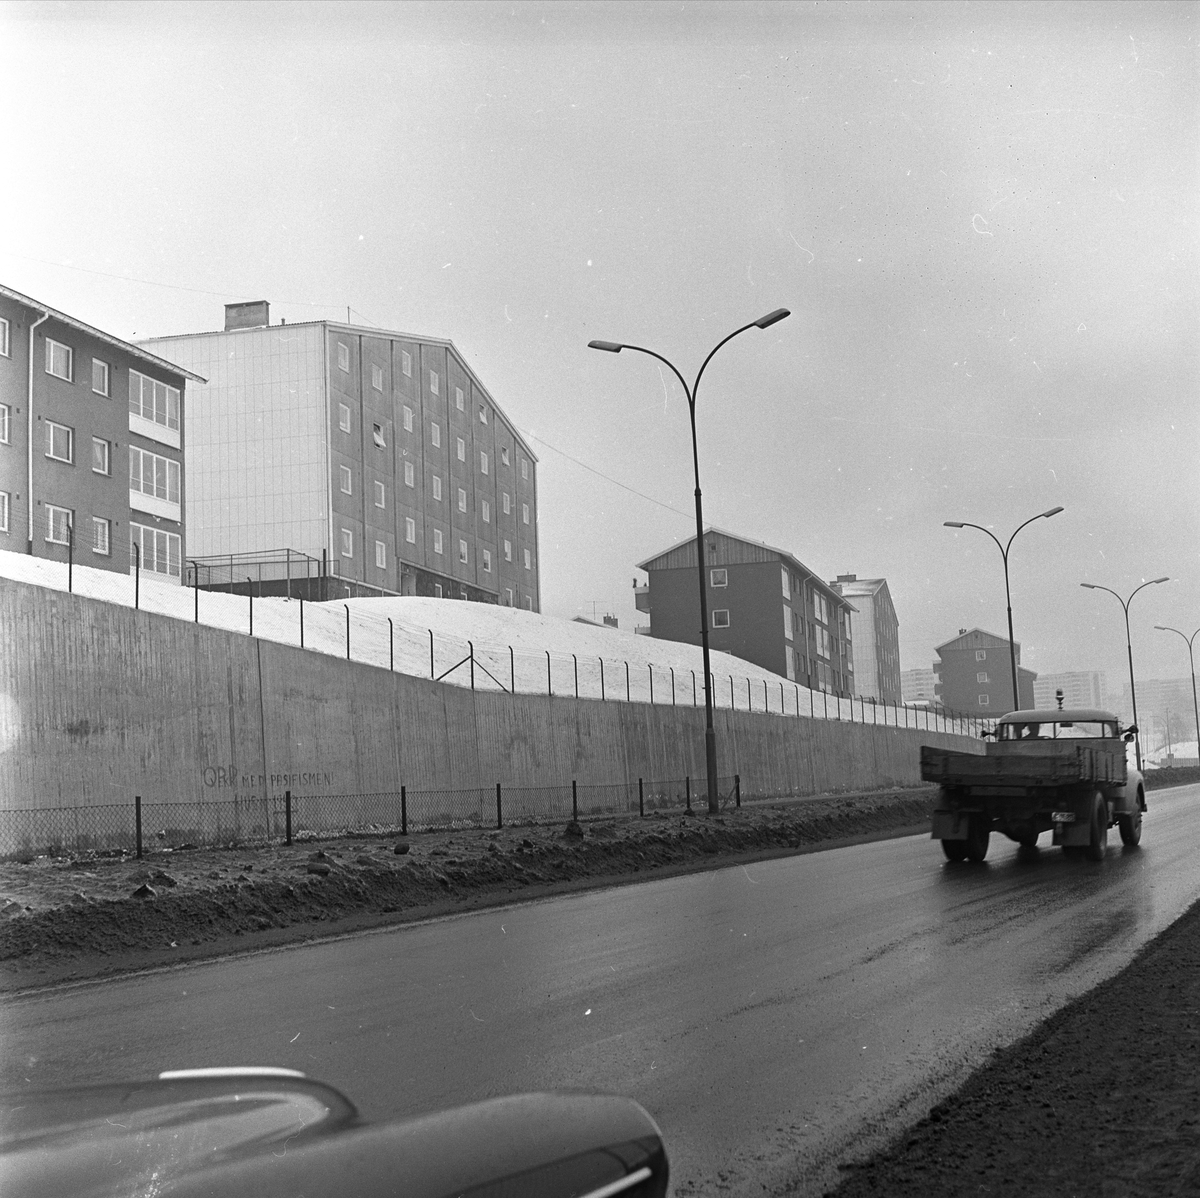 Trondheimsveien ved Slettaløkka på Veitvet i Oslo. Vei med lastebil og boligblokker fotografert i 1956.